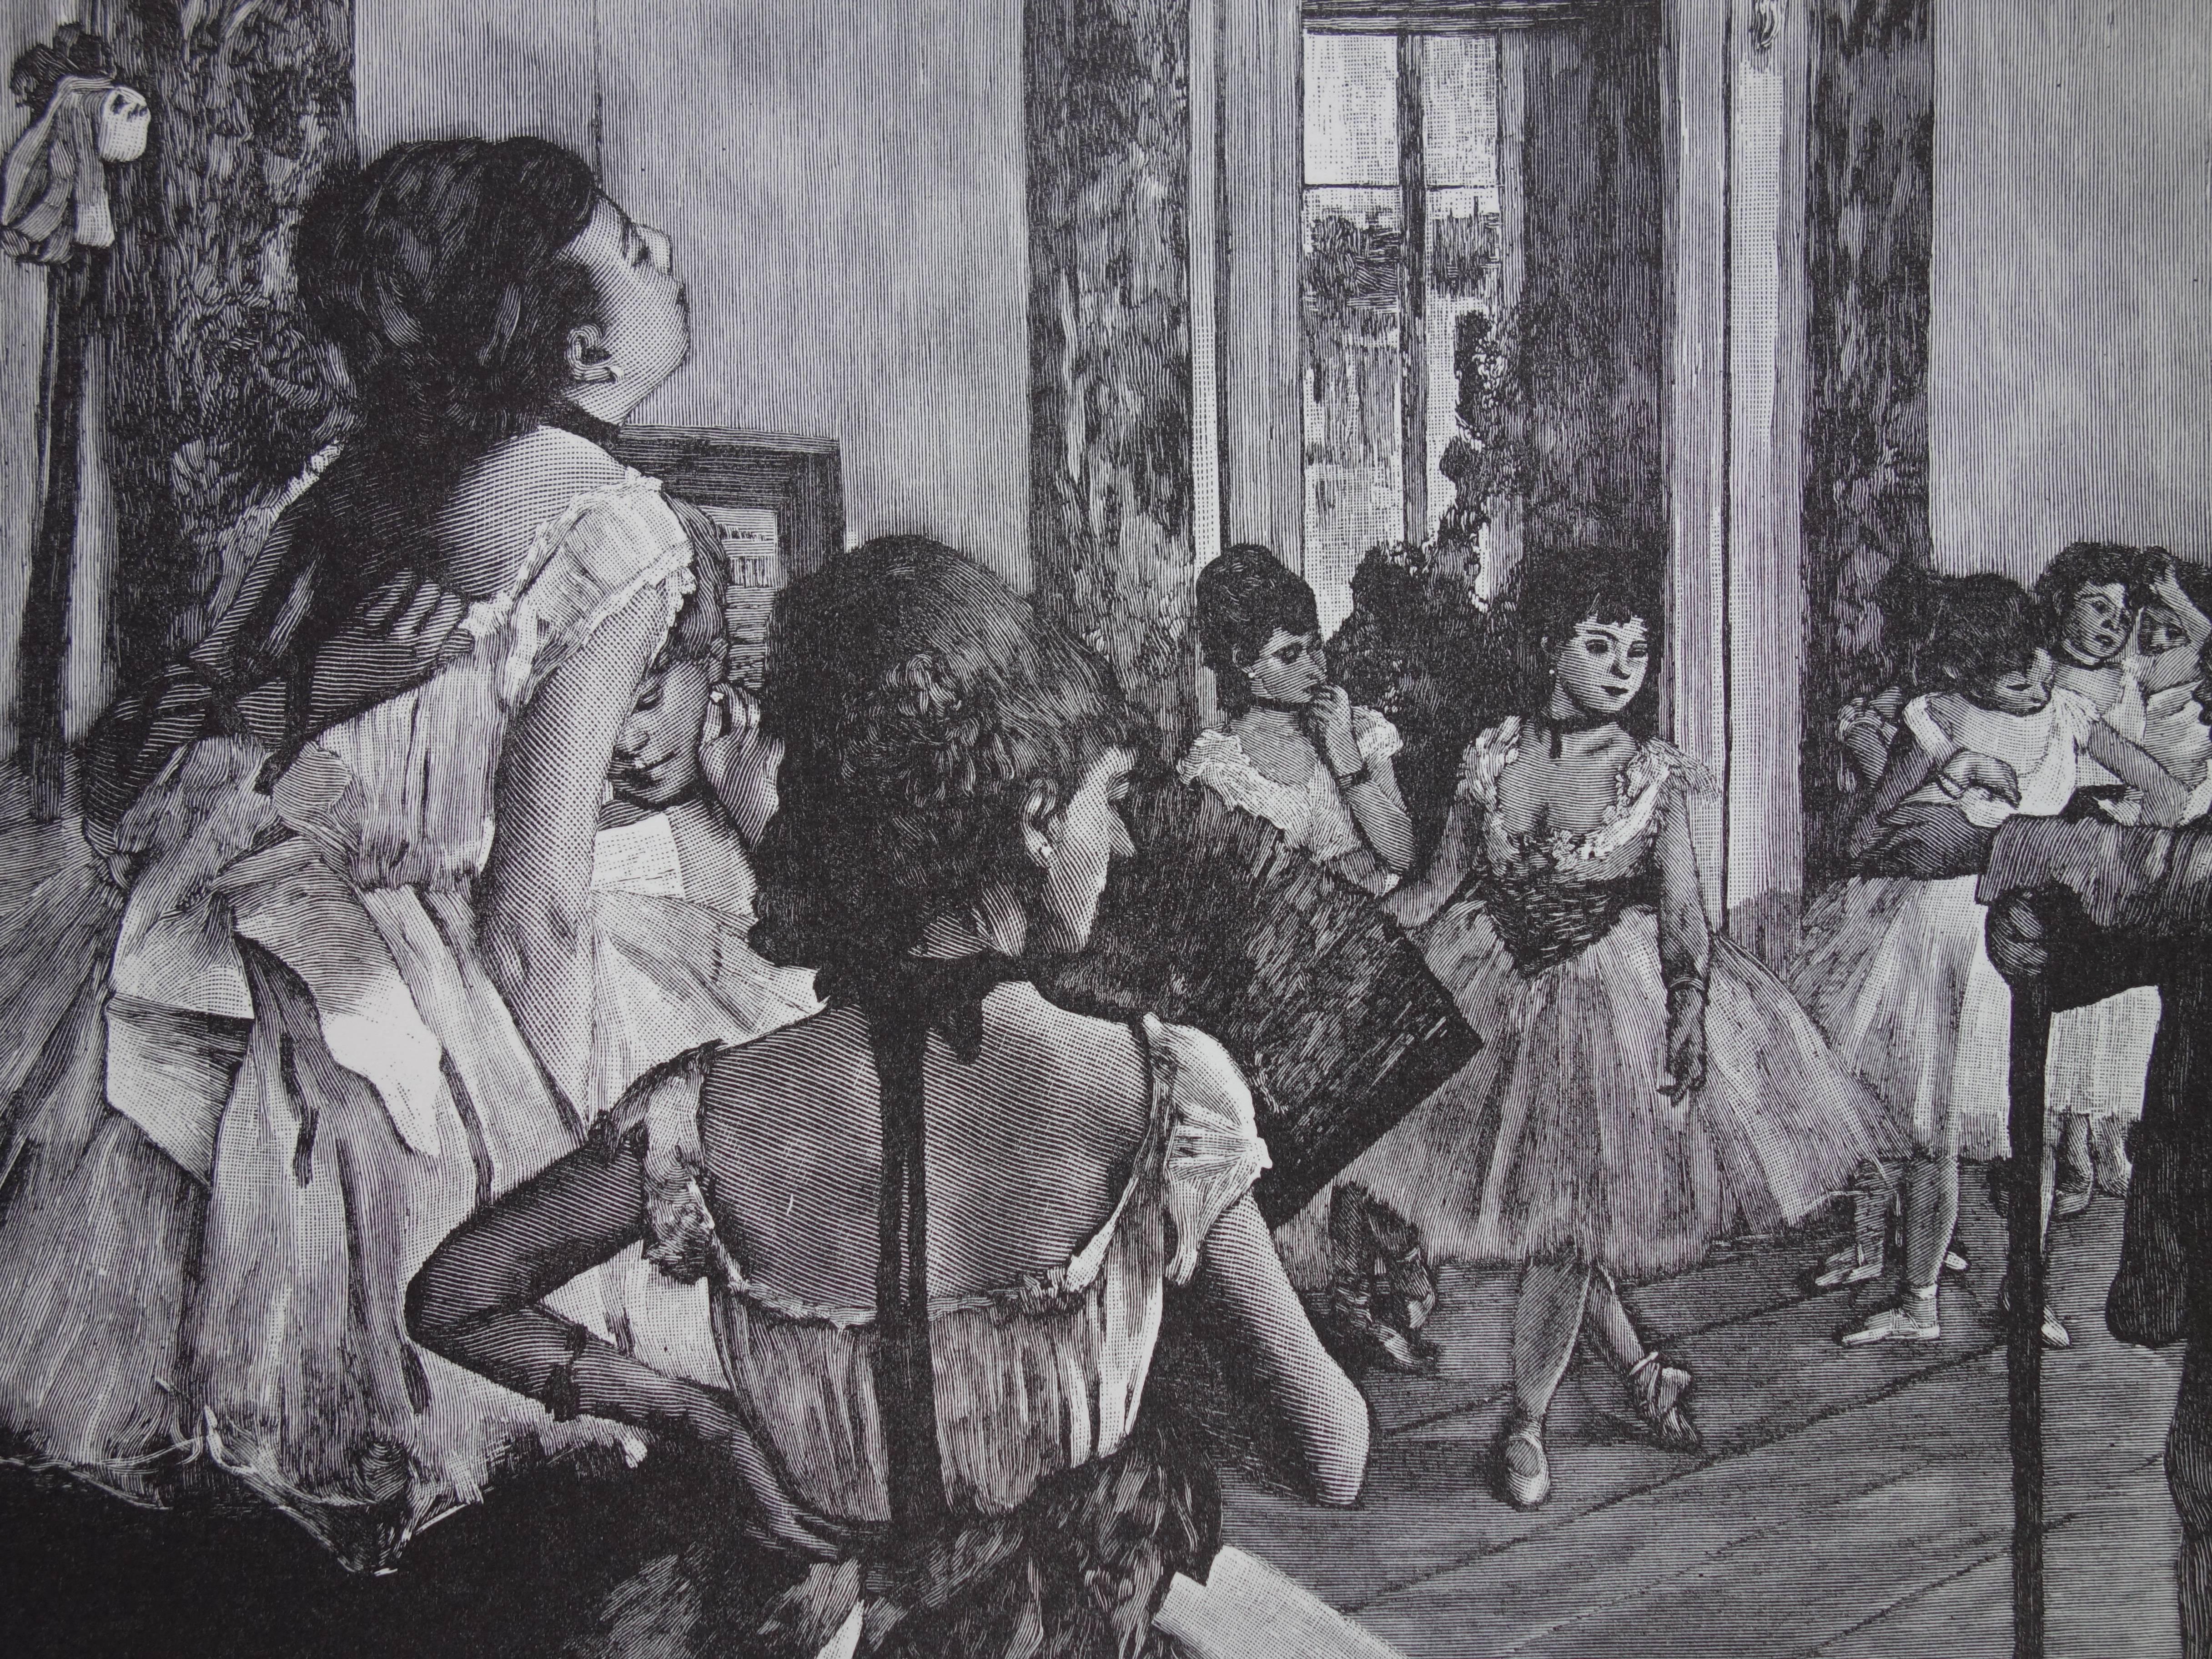 Dance class - Woodcut - Louvre Museum edition after Edgar DEGAS - Realist Print by (after) Edgar Degas